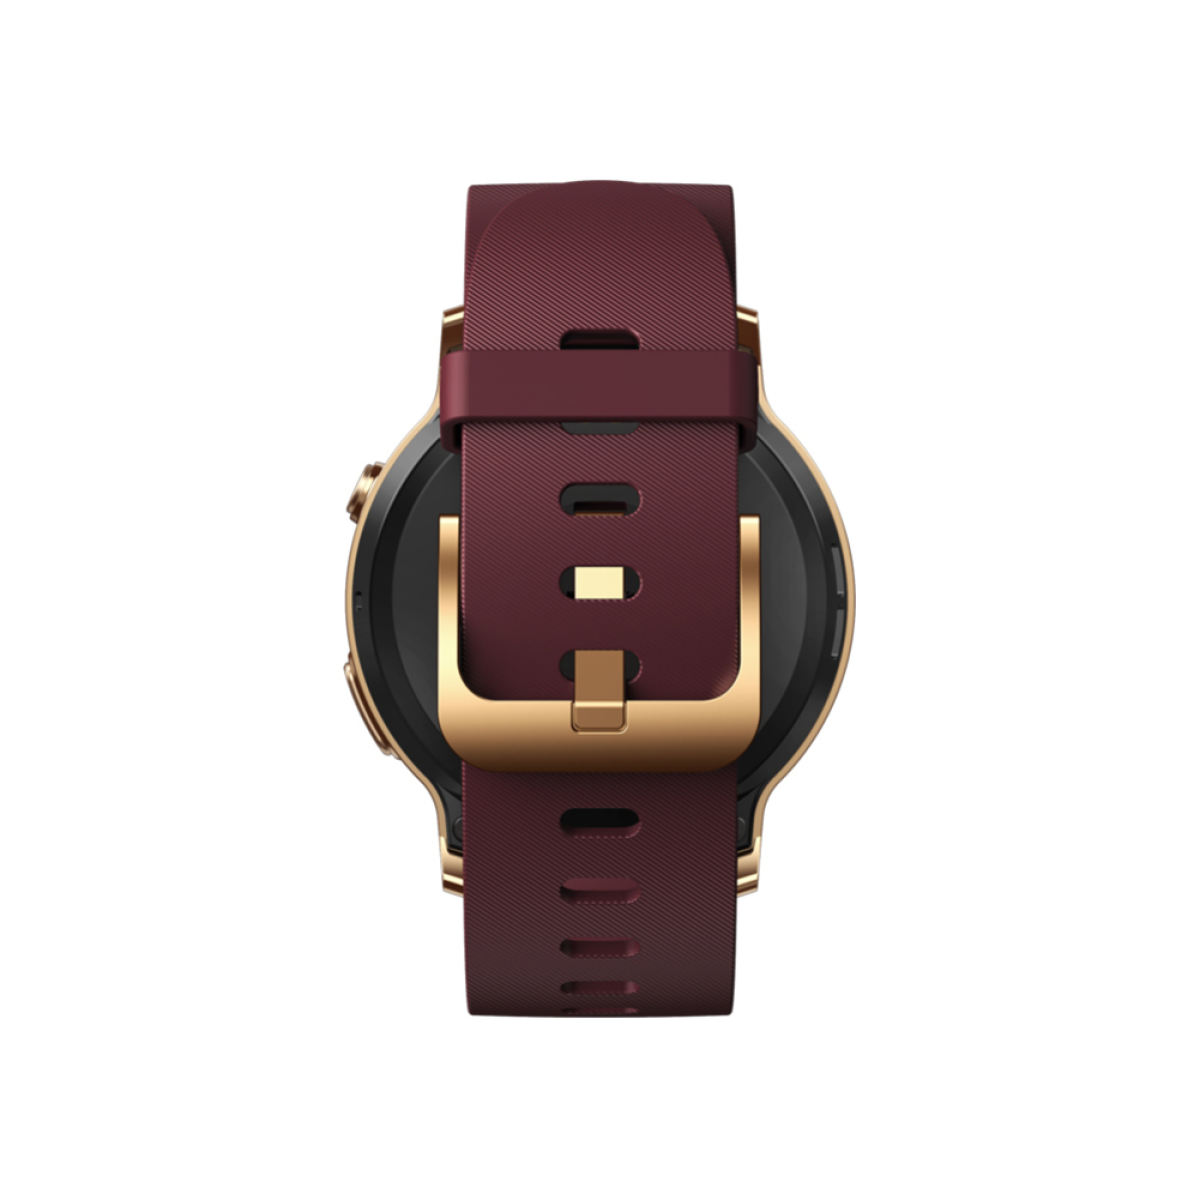 Smartwatch Zeblaze GTR 2 Gold